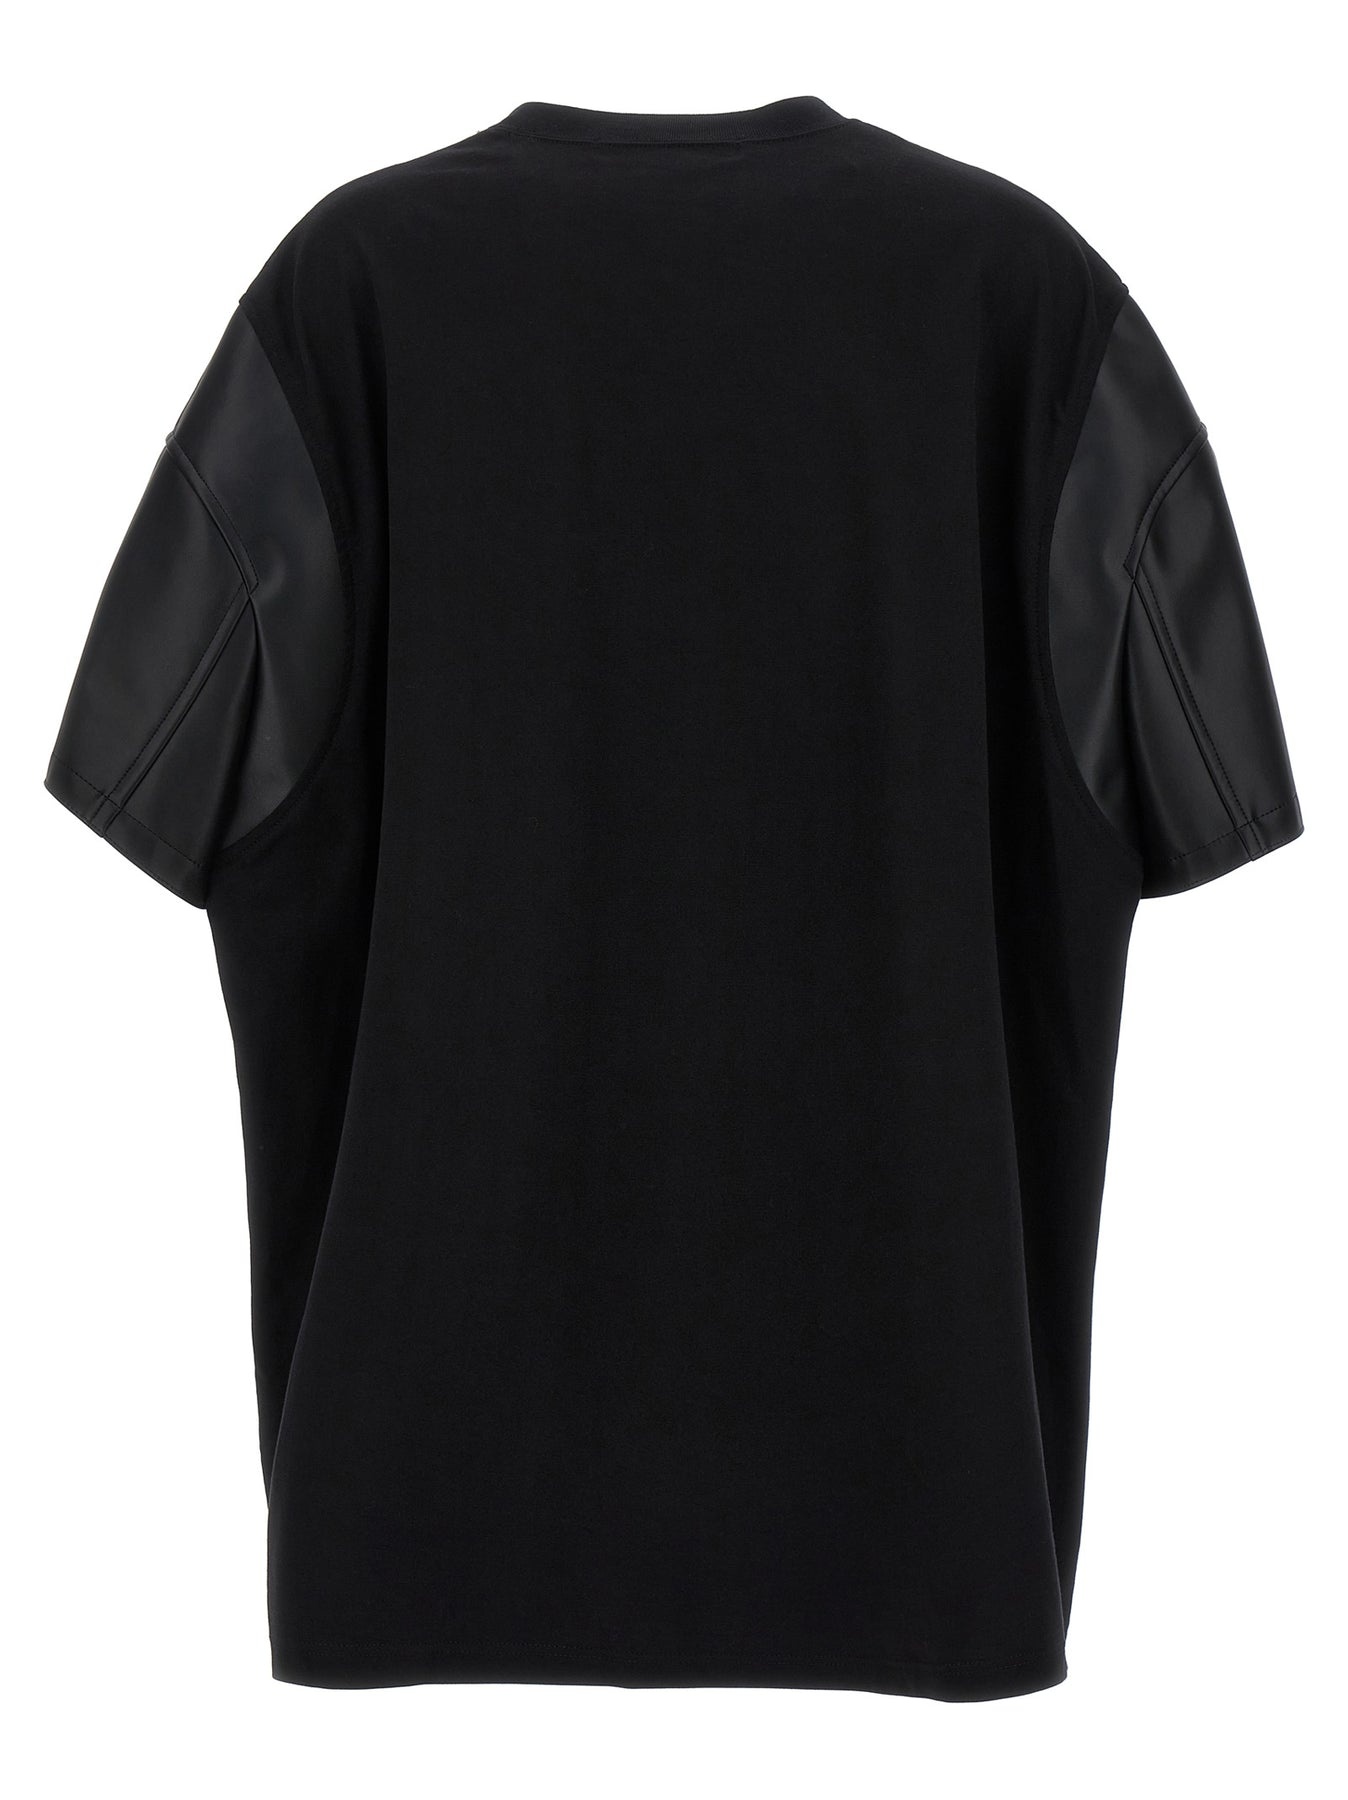 Eco-Leather Sleeve T-Shirt Black - 2